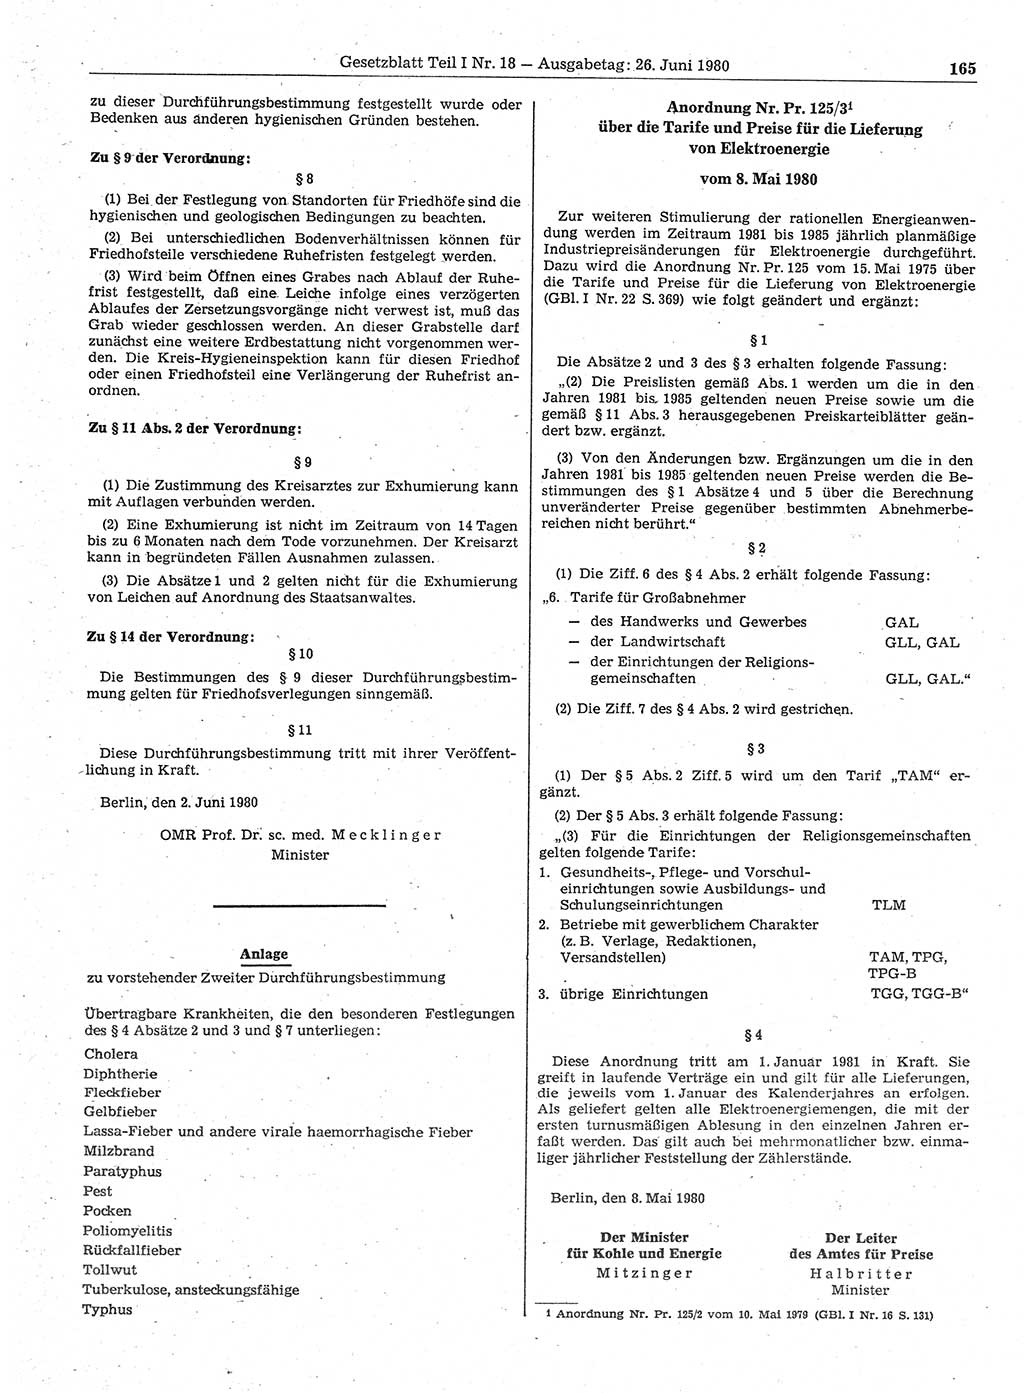 Gesetzblatt (GBl.) der Deutschen Demokratischen Republik (DDR) Teil Ⅰ 1980, Seite 165 (GBl. DDR Ⅰ 1980, S. 165)